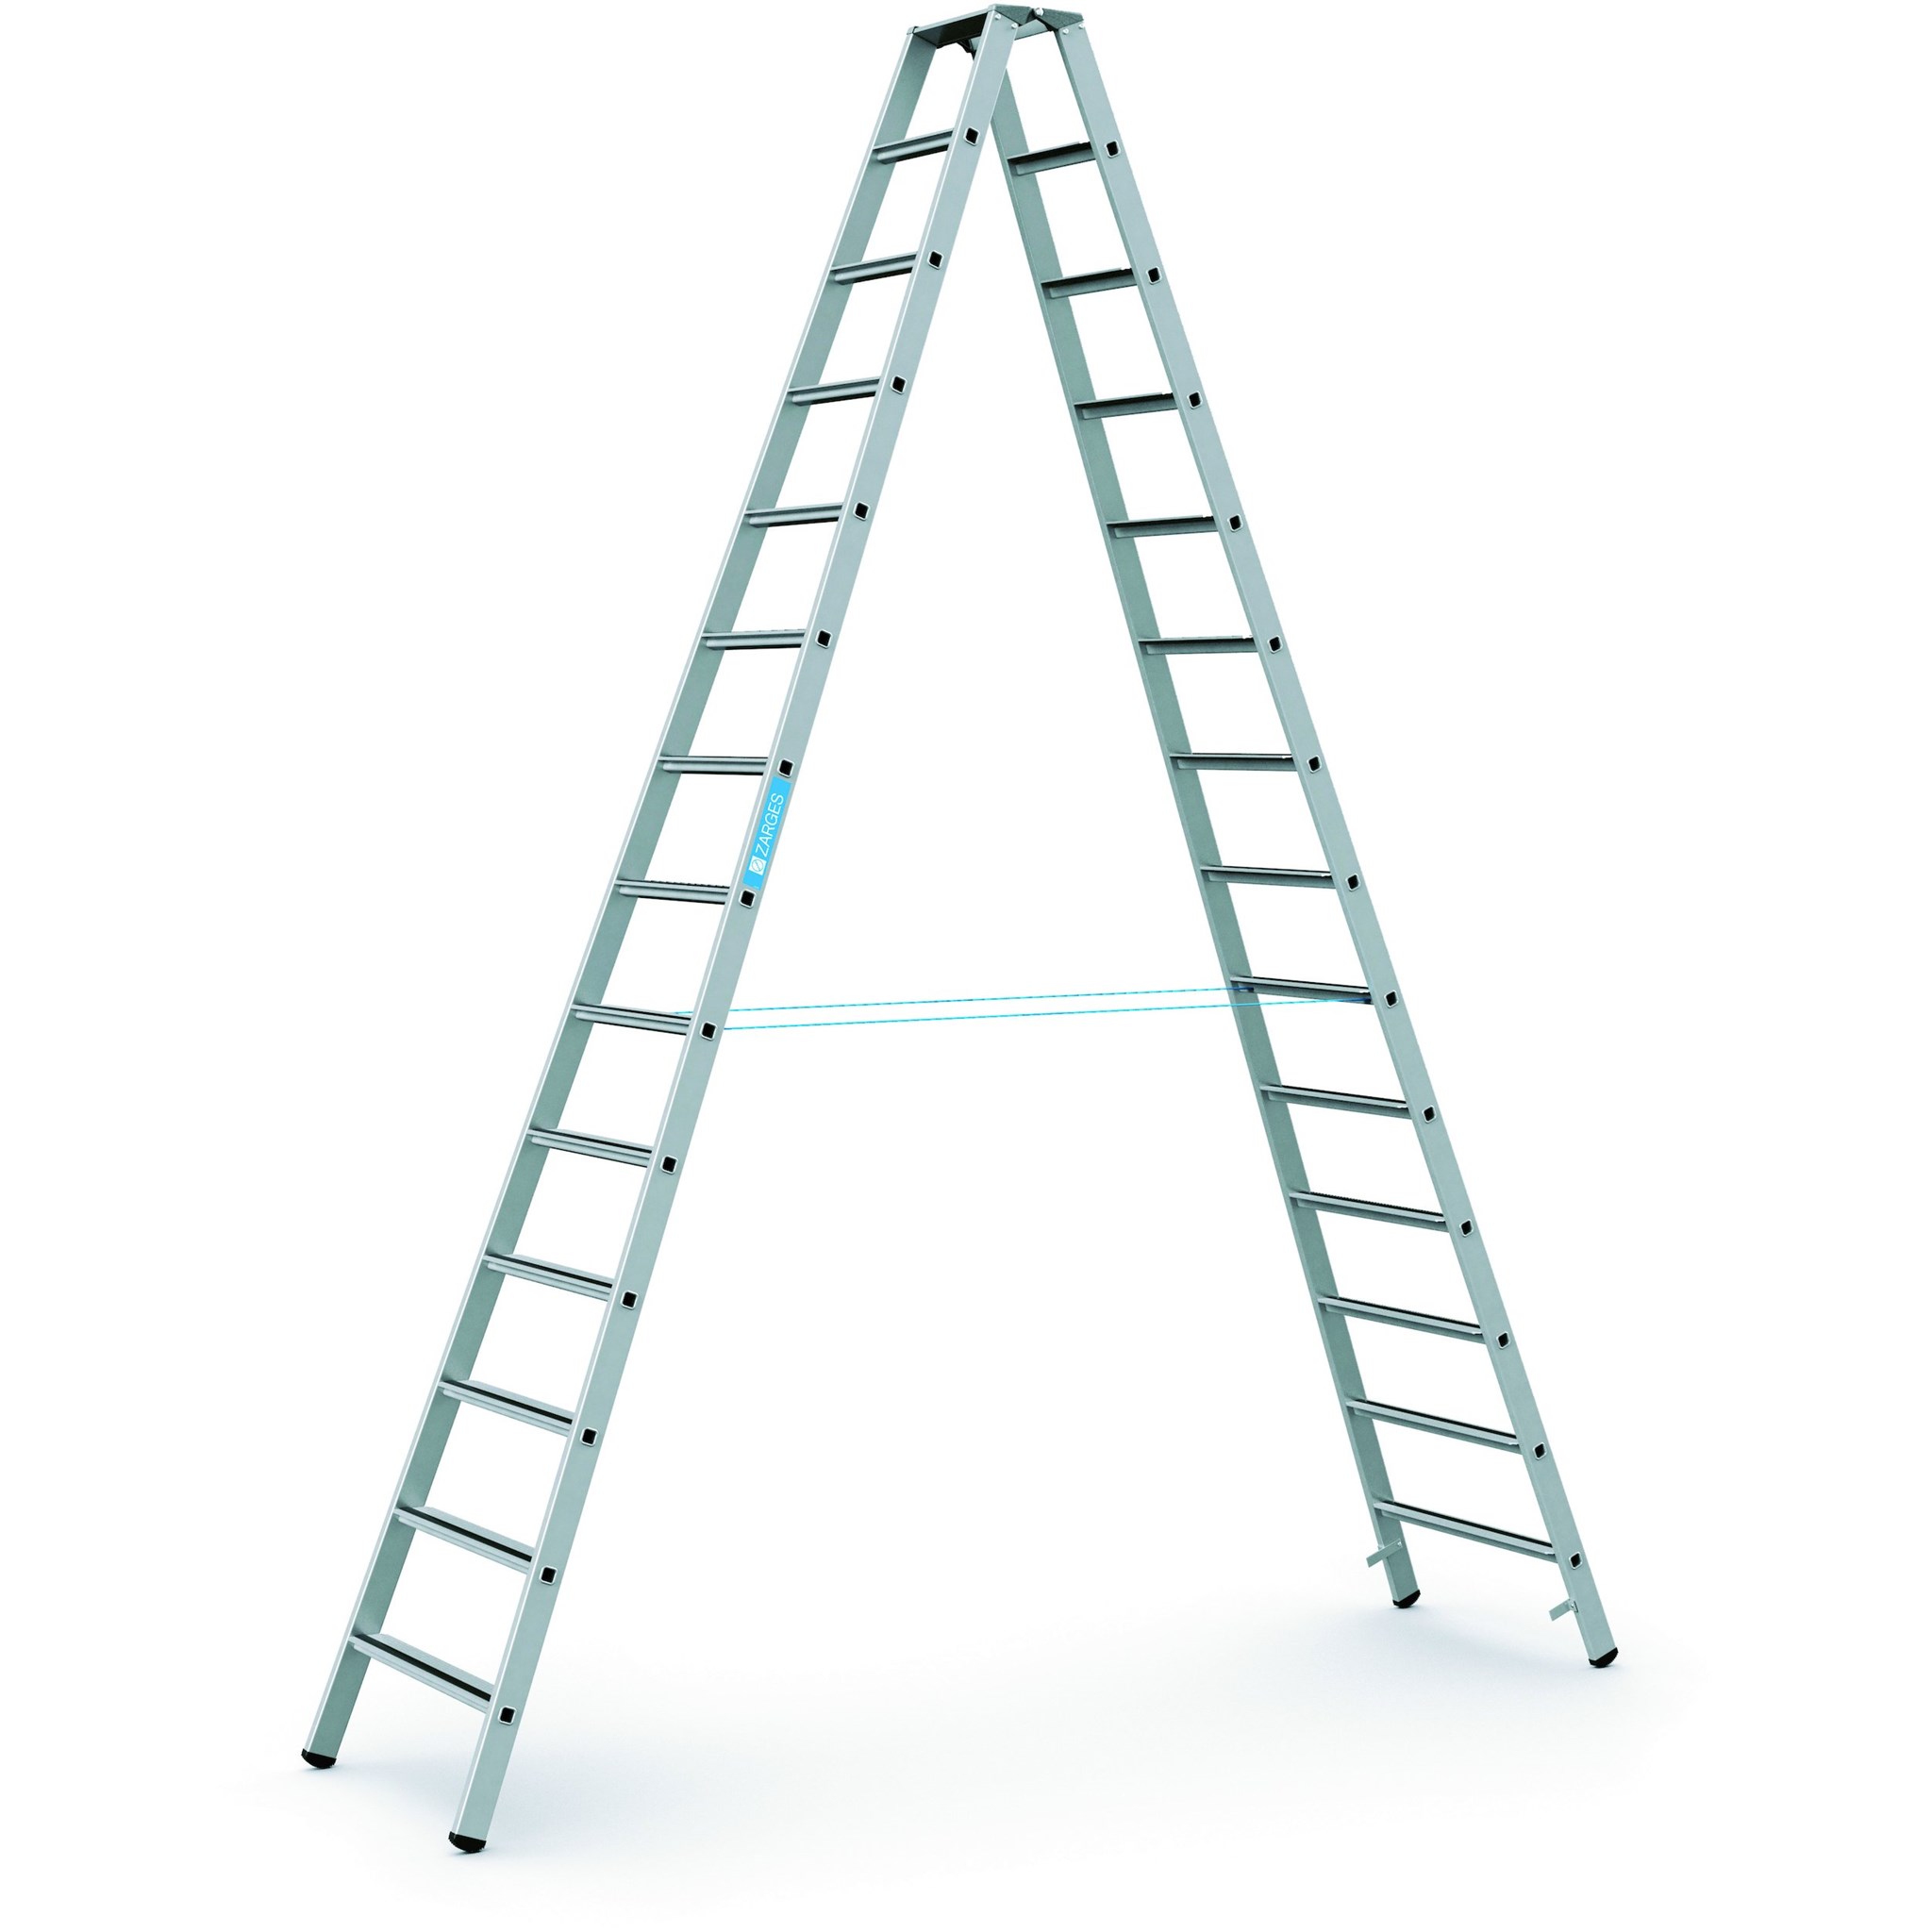 Picture of Stufenleiter Saferstep B 2x14 Stufen Leiterlänge 3,95 m Arbeitshöhe 5,20 m